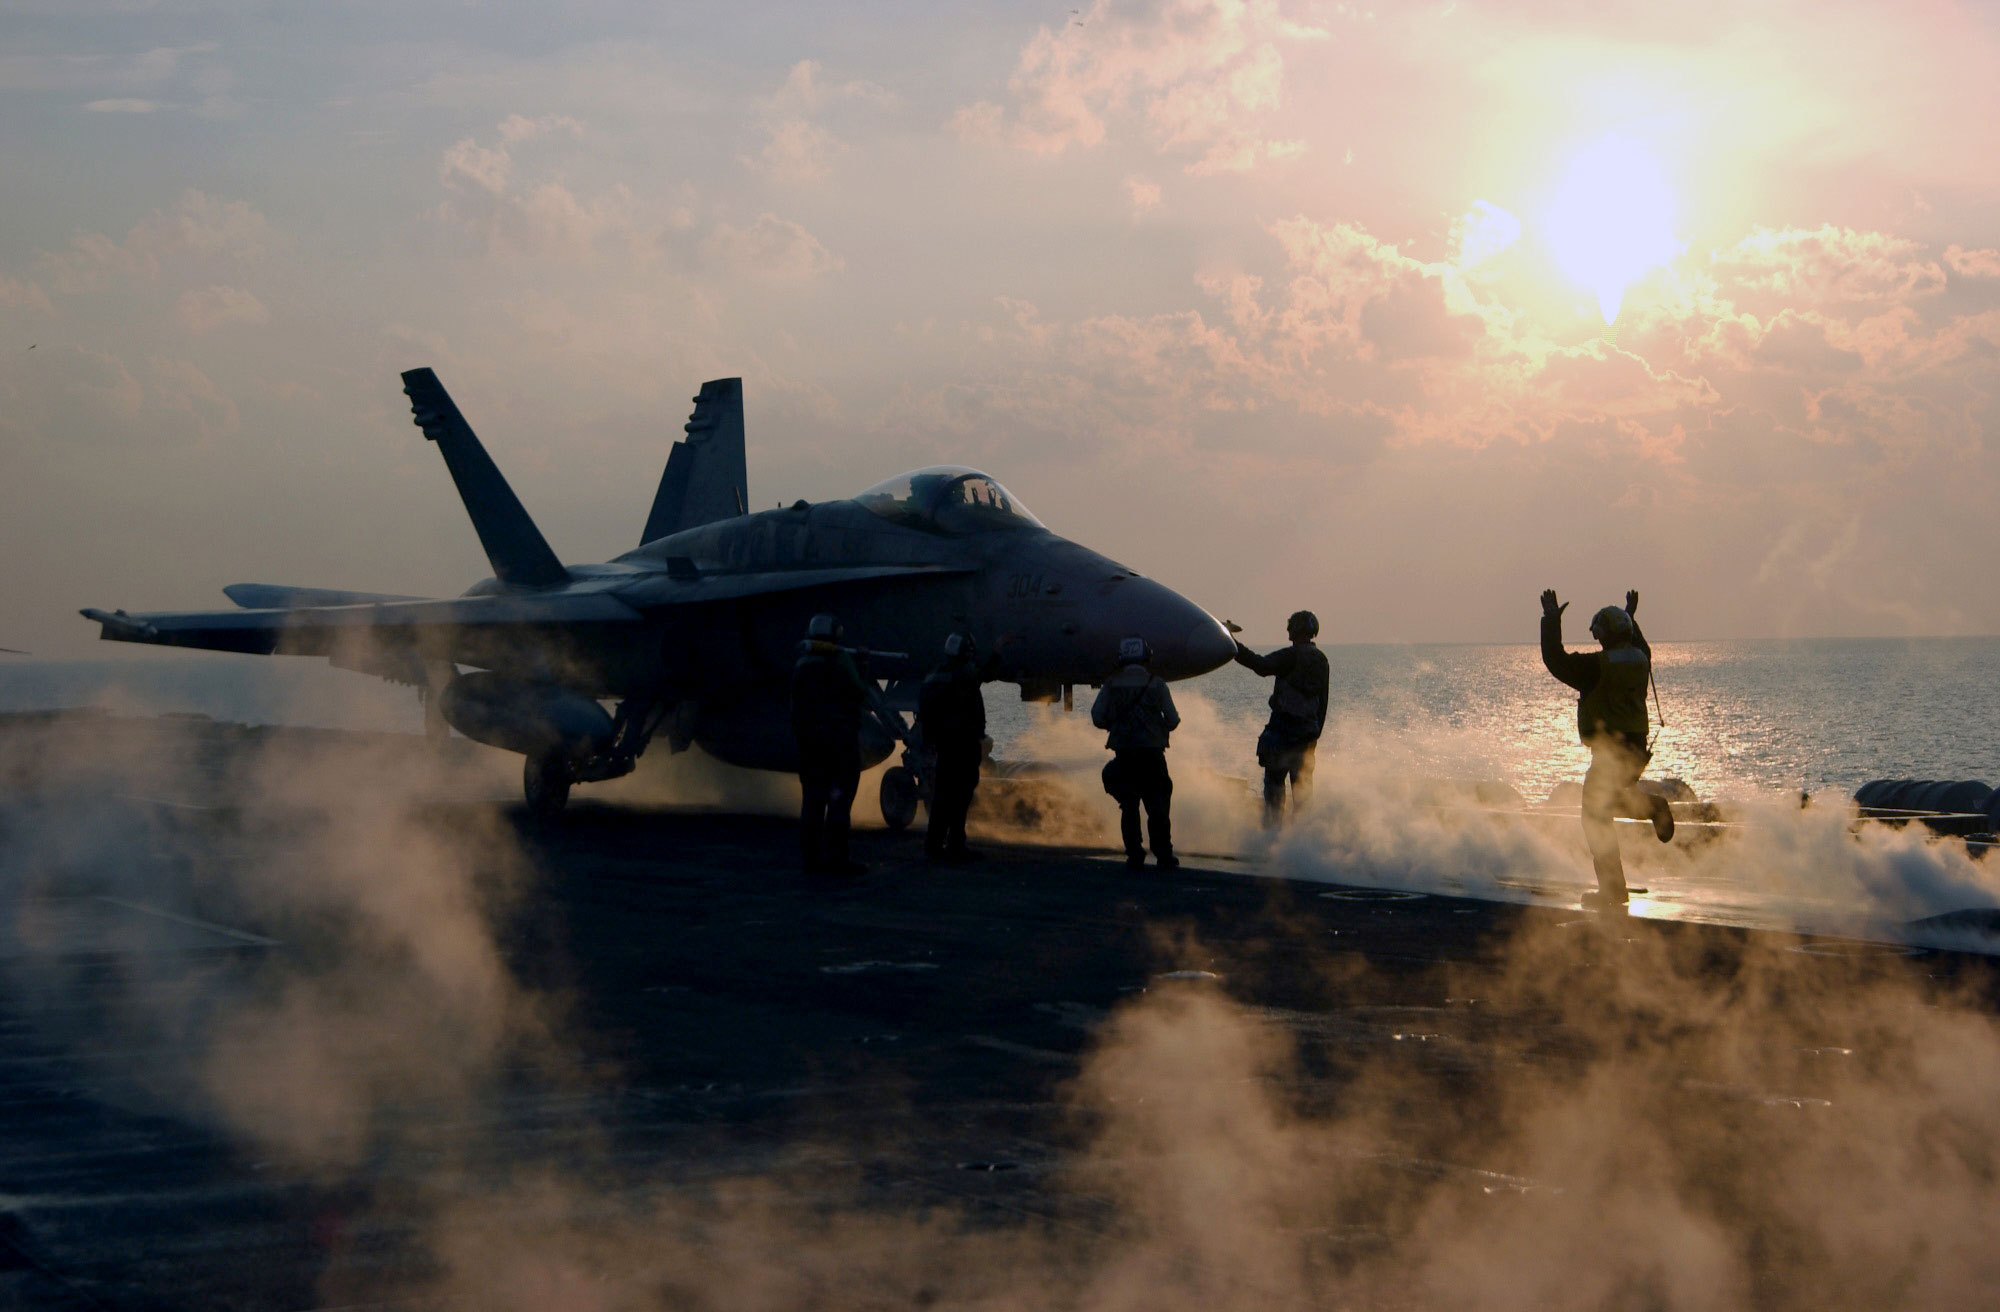 пар, самолет, военный, самолеты, транспортные средства, F- 18 Hornet - обои на рабочий стол